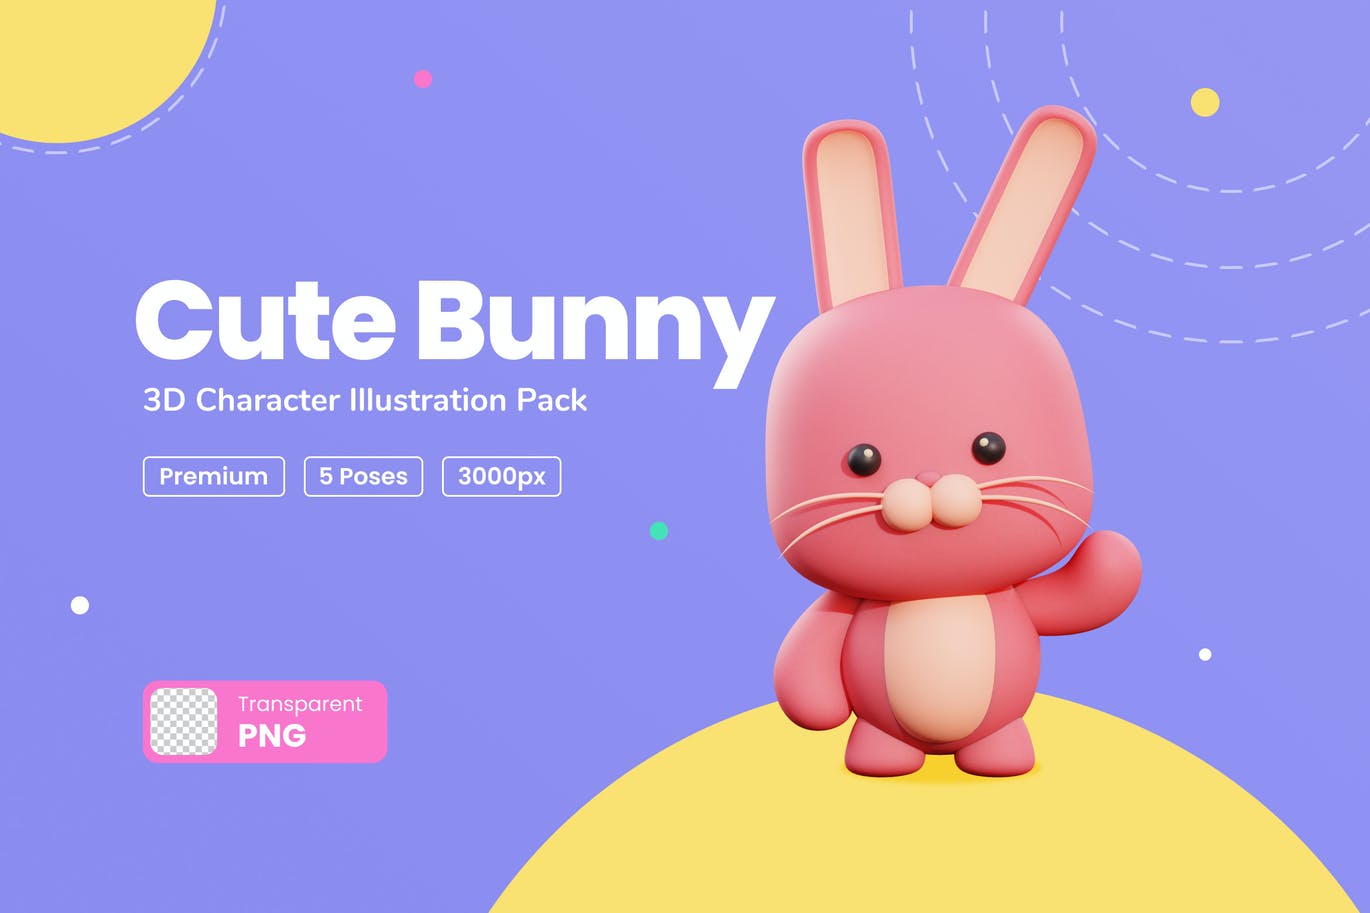 三维可爱兔子卡通形象插画素材 Cute Bunny 3D C